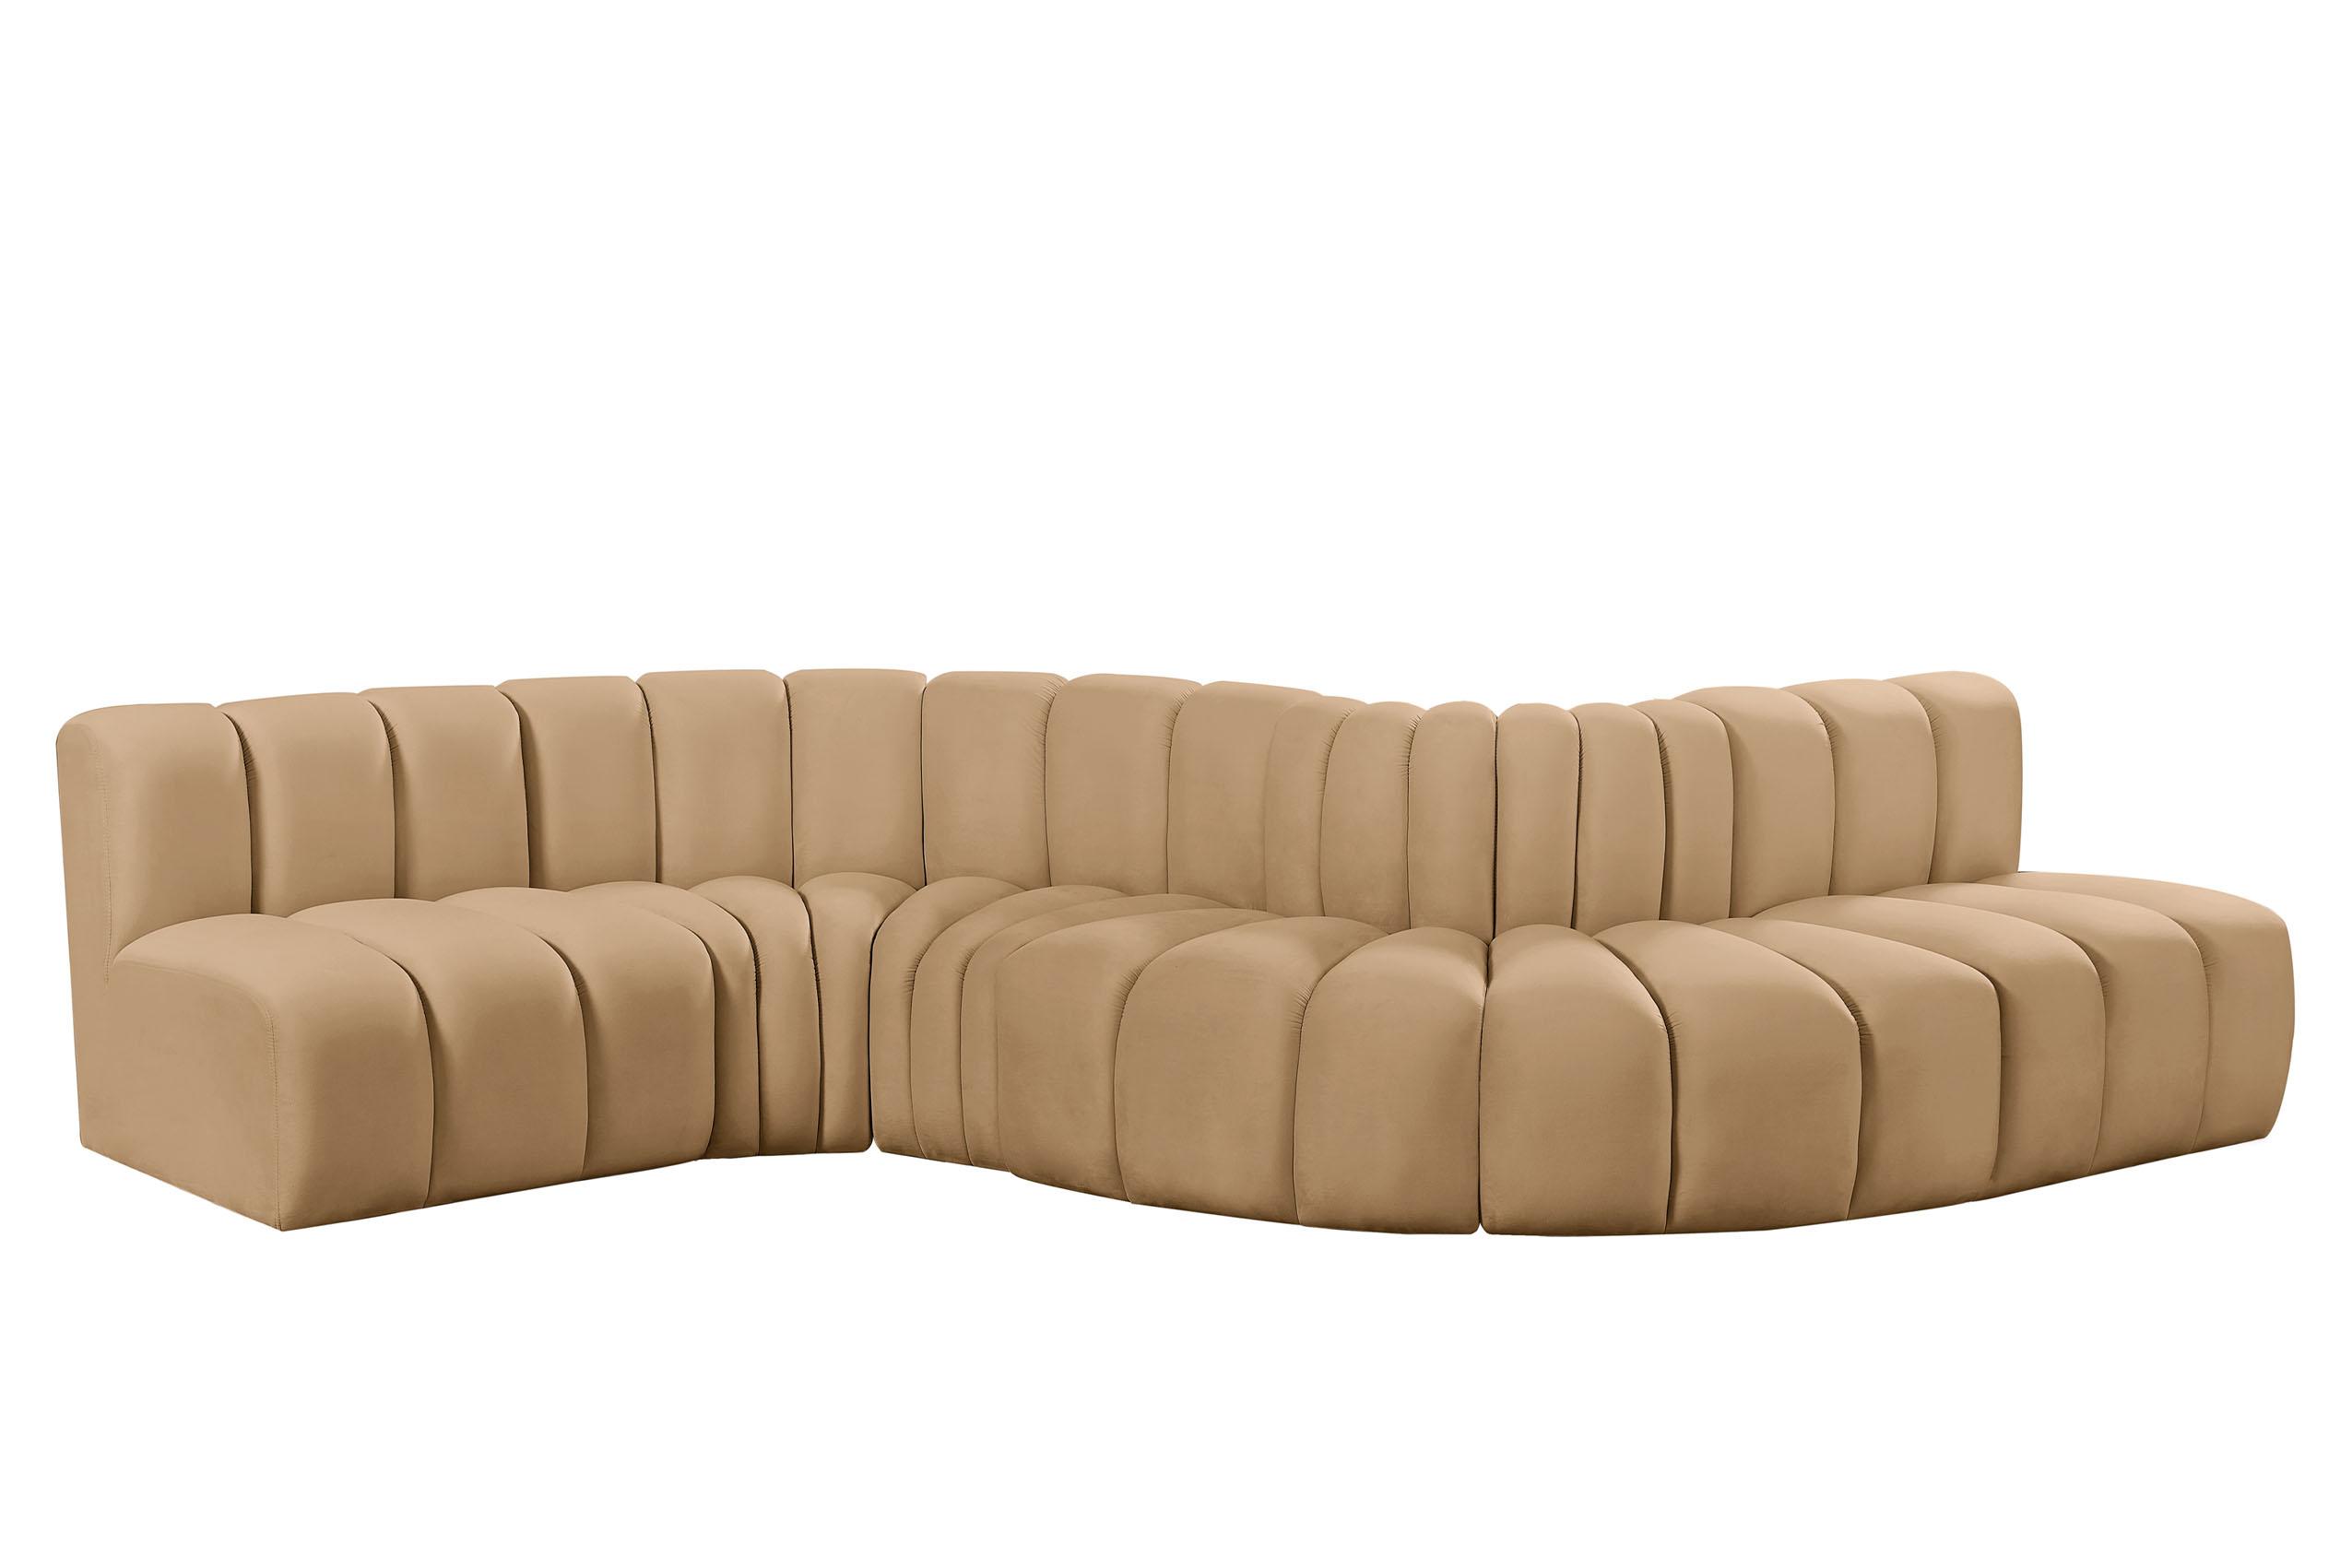 Contemporary, Modern Modular Sectional Sofa ARC 103Camel-S6A 103Camel-S6A in Camel Velvet